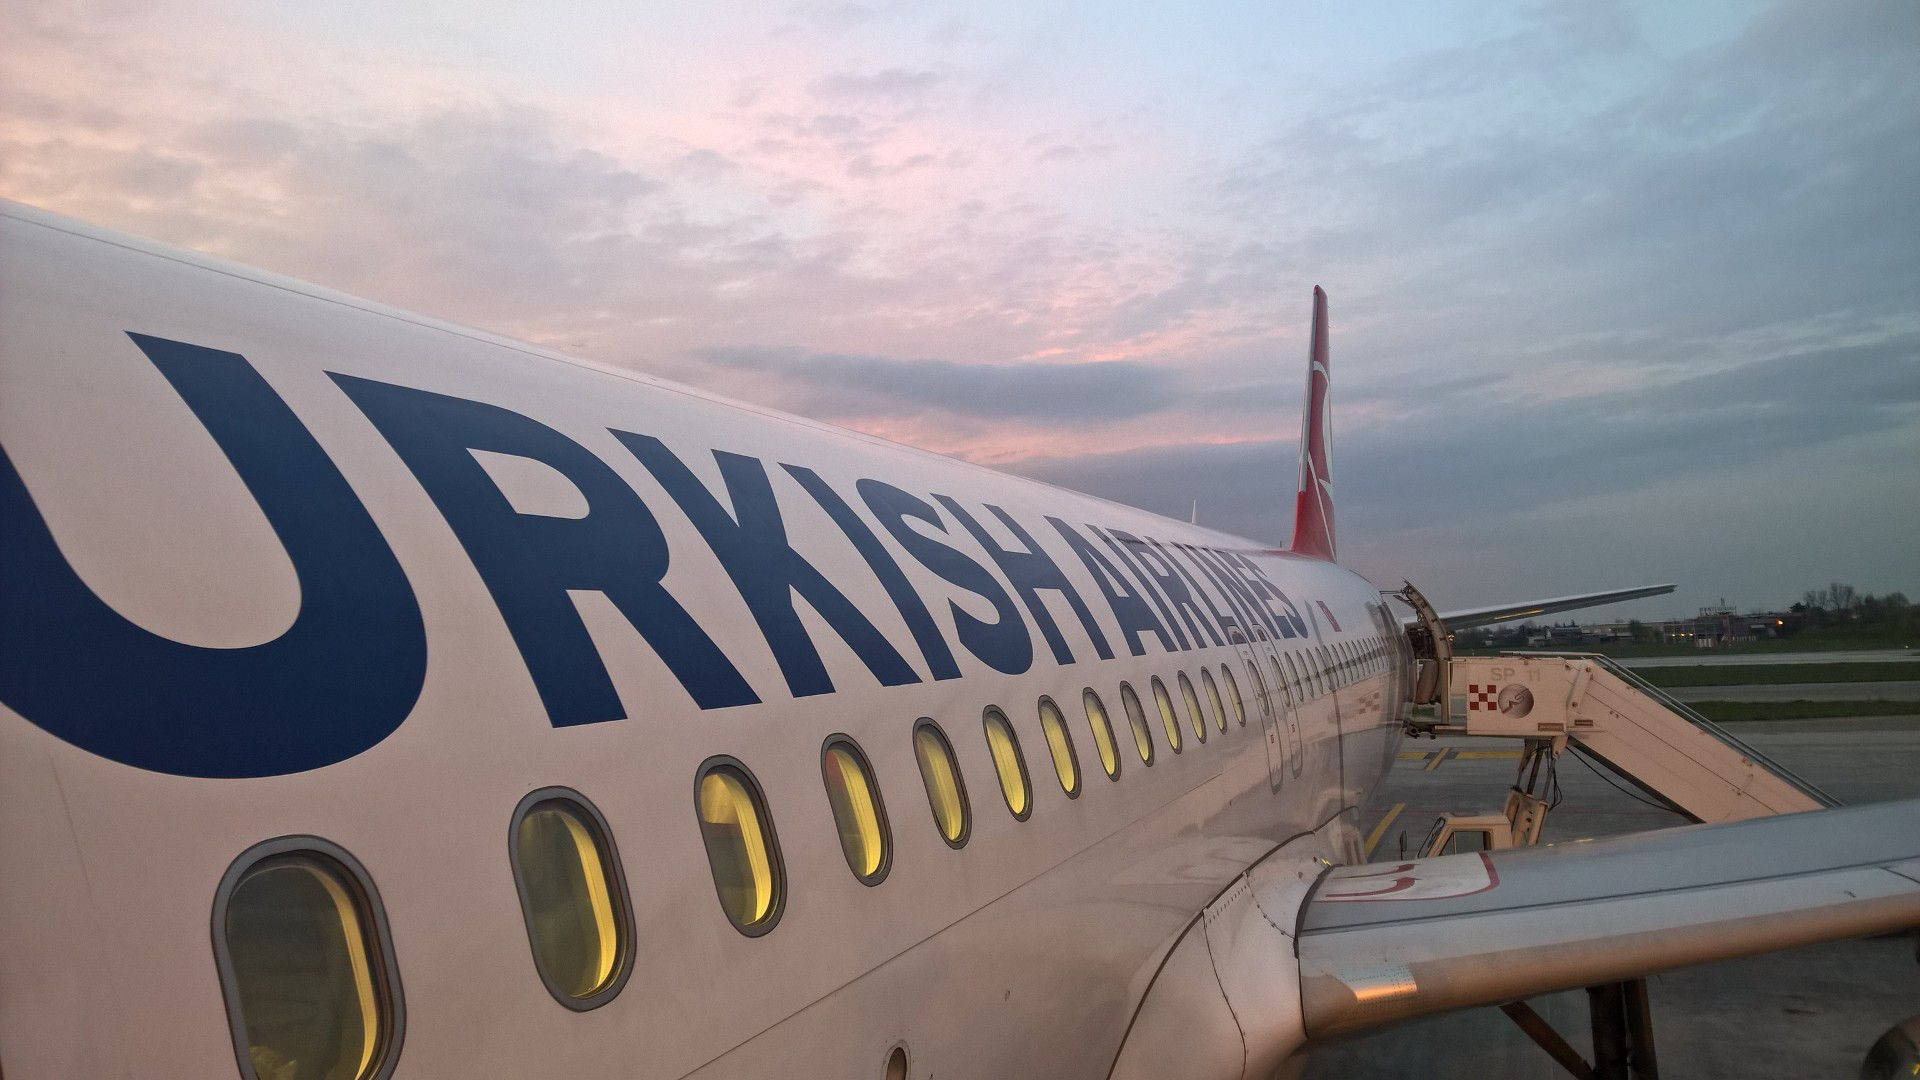 Turkiskaflygbolag Ombordstigning På Flygplanet. Wallpaper